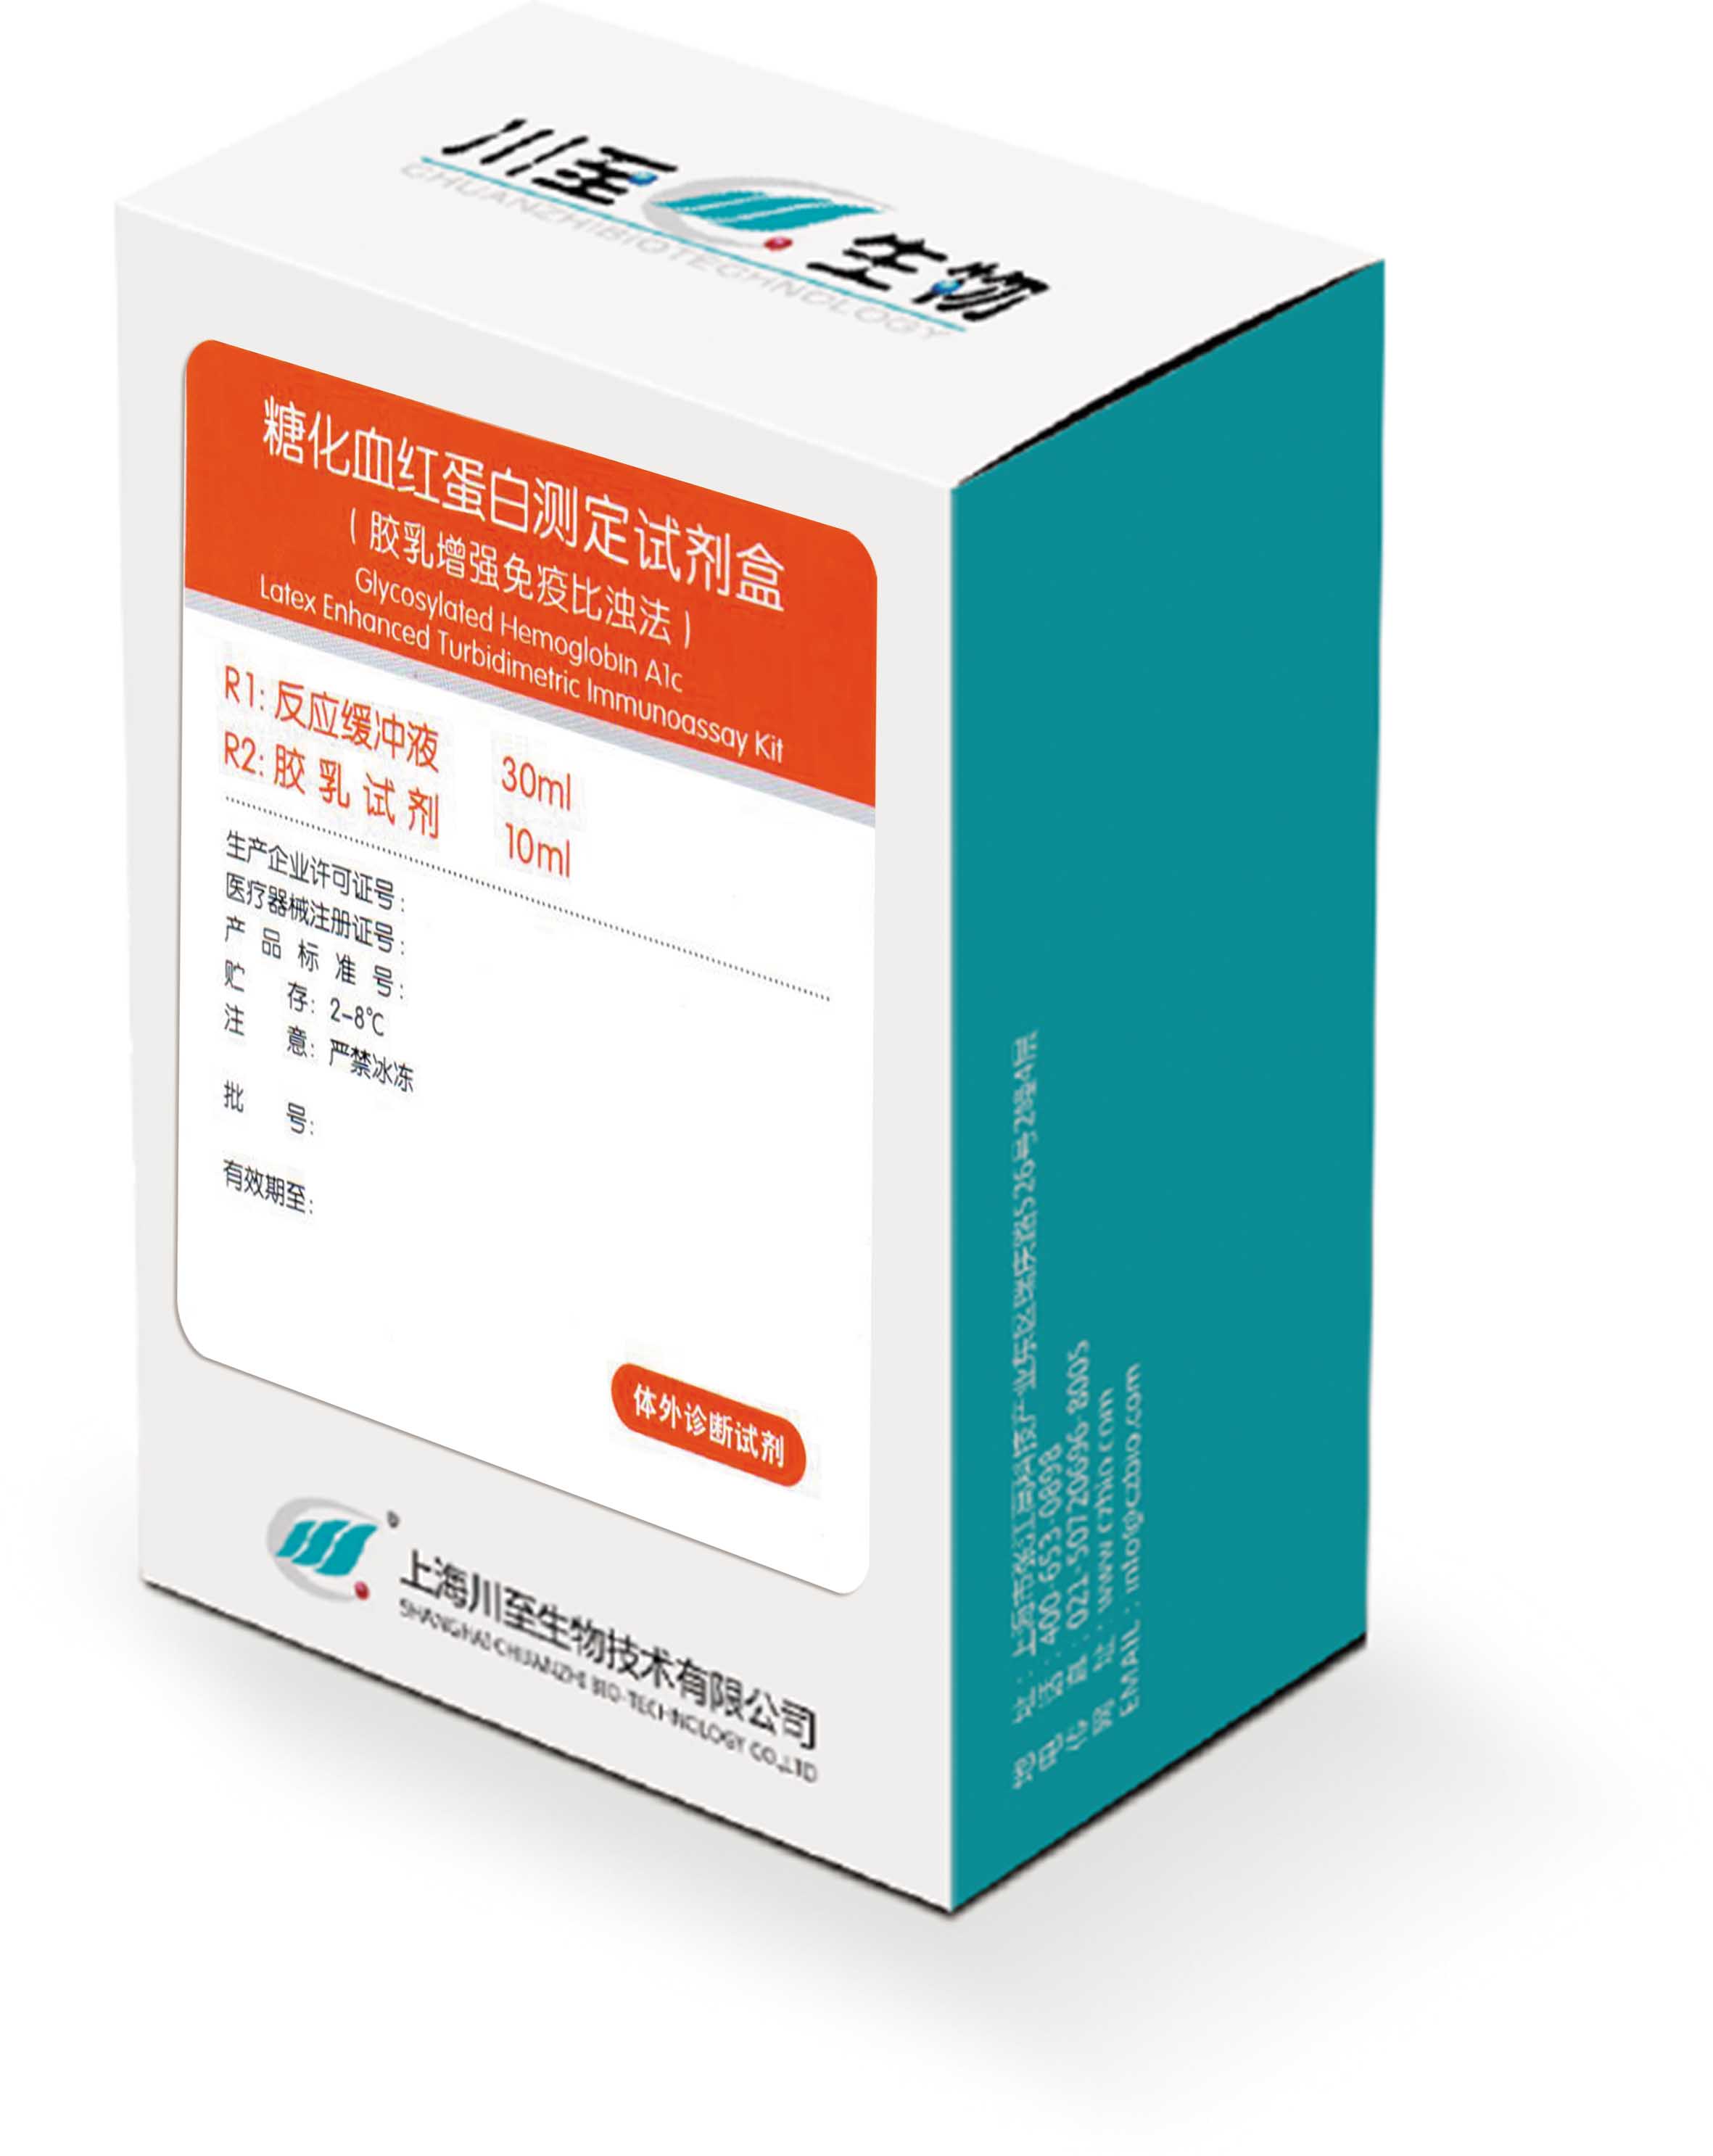 糖化血紅蛋白測定試劑盒（HbA1c）